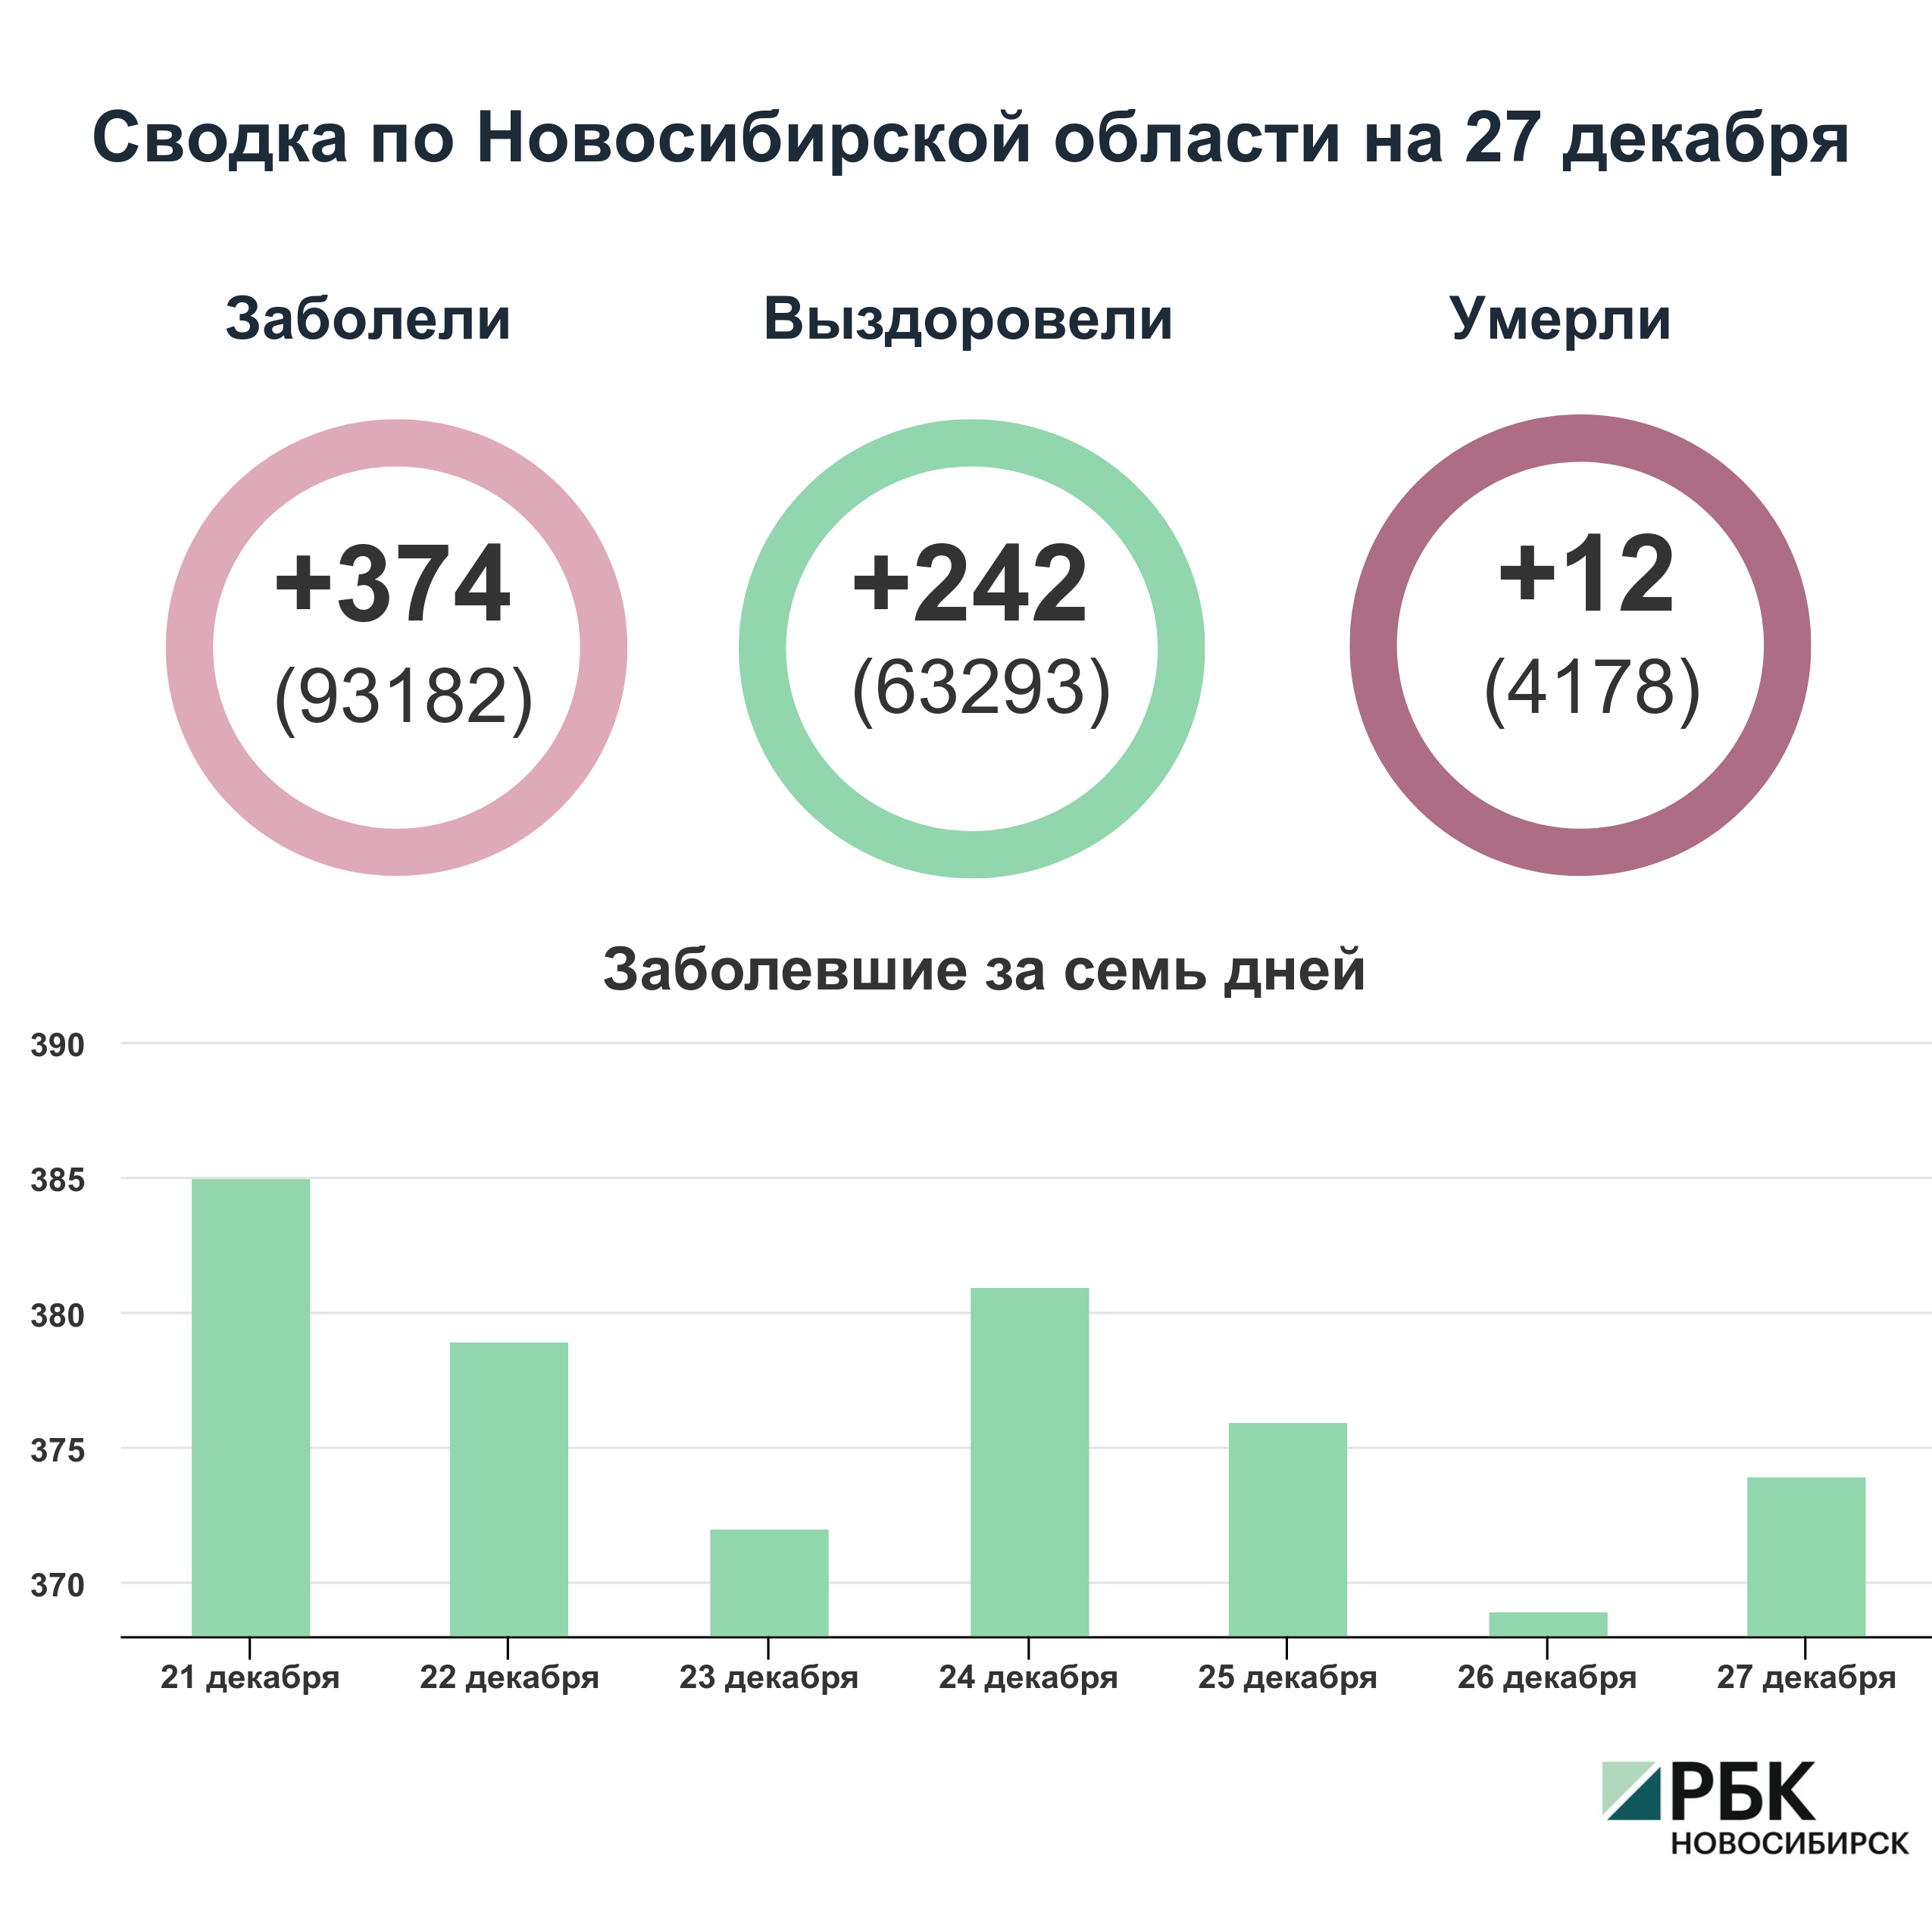 Коронавирус в Новосибирске: сводка на 27 декабря